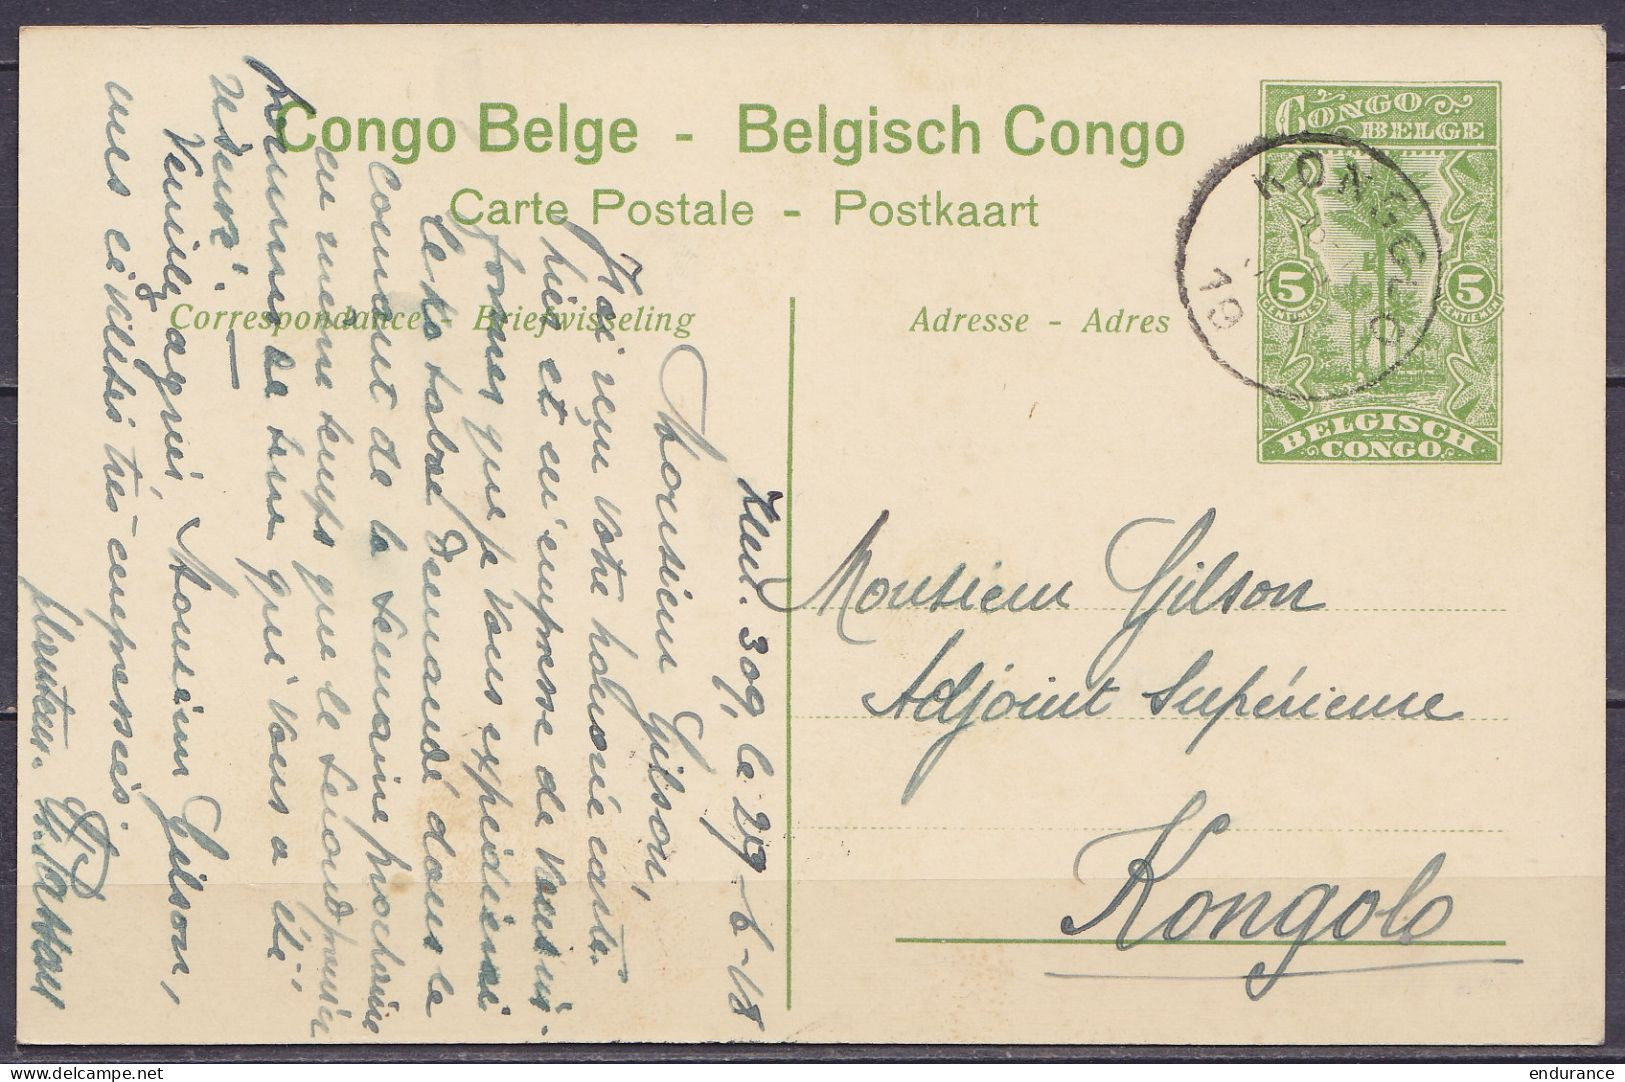 Congo Belge - EP CP 5c Vert "La Ruzizi" D'un Planteur Càd KONGOLO /29 JUIN 1918 Pour Adjoint Supérieur André Gilson E/V  - Postwaardestukken